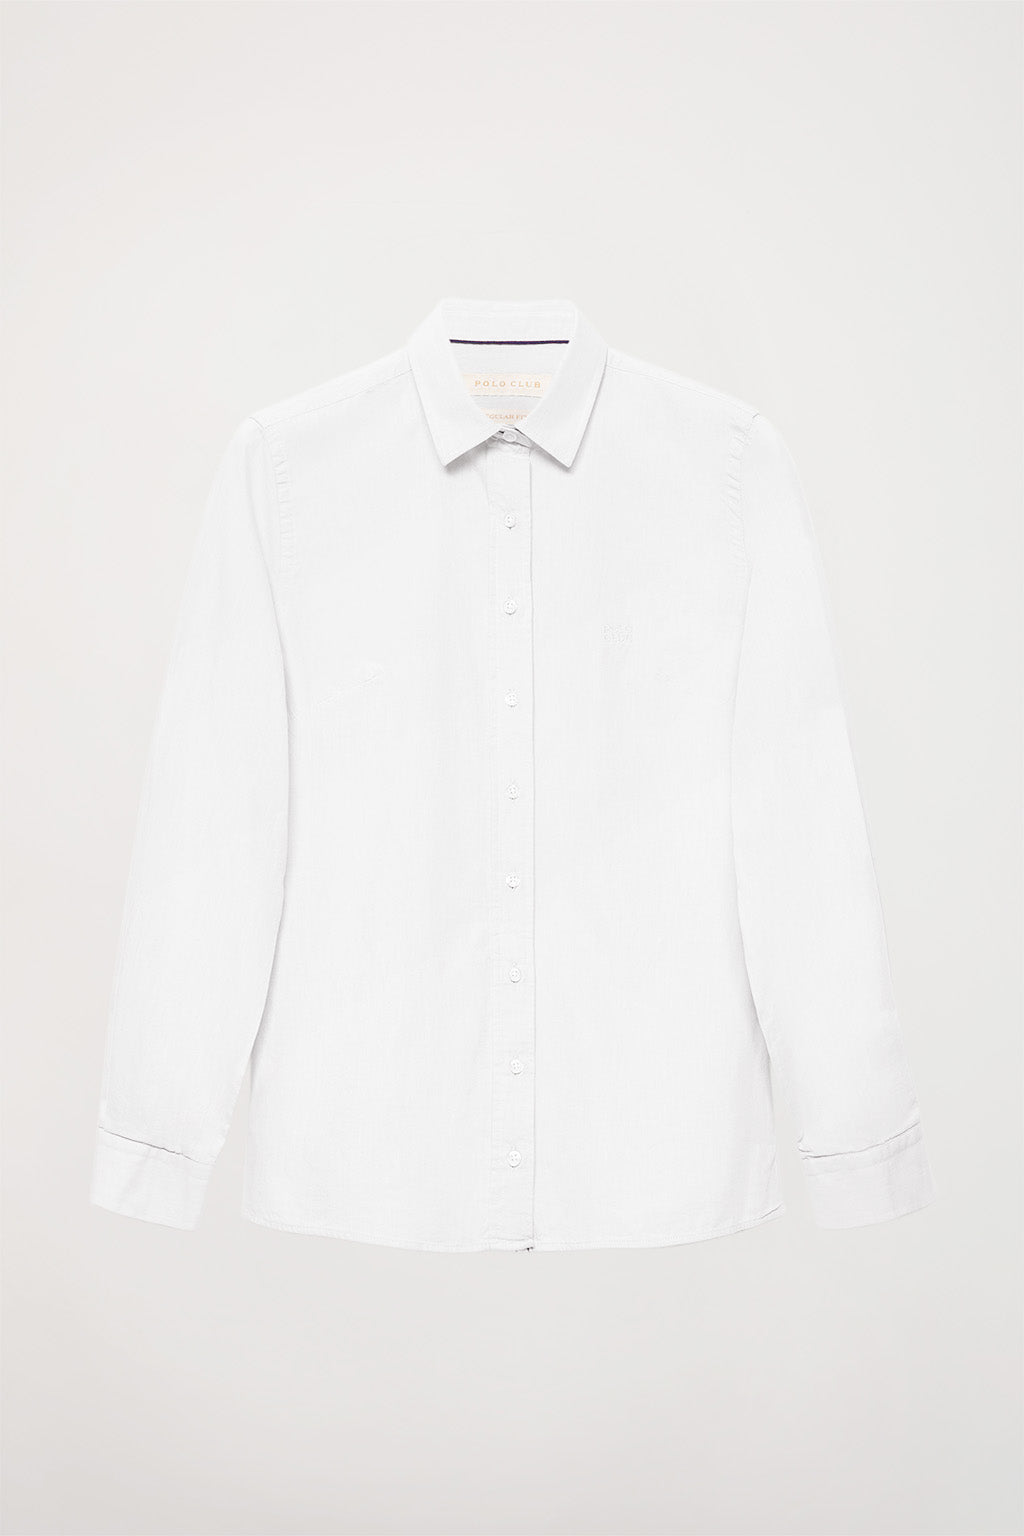 Camisa blanca de algodón lavada con detalle bordado en el pecho | MUJER  | POLO CLUB